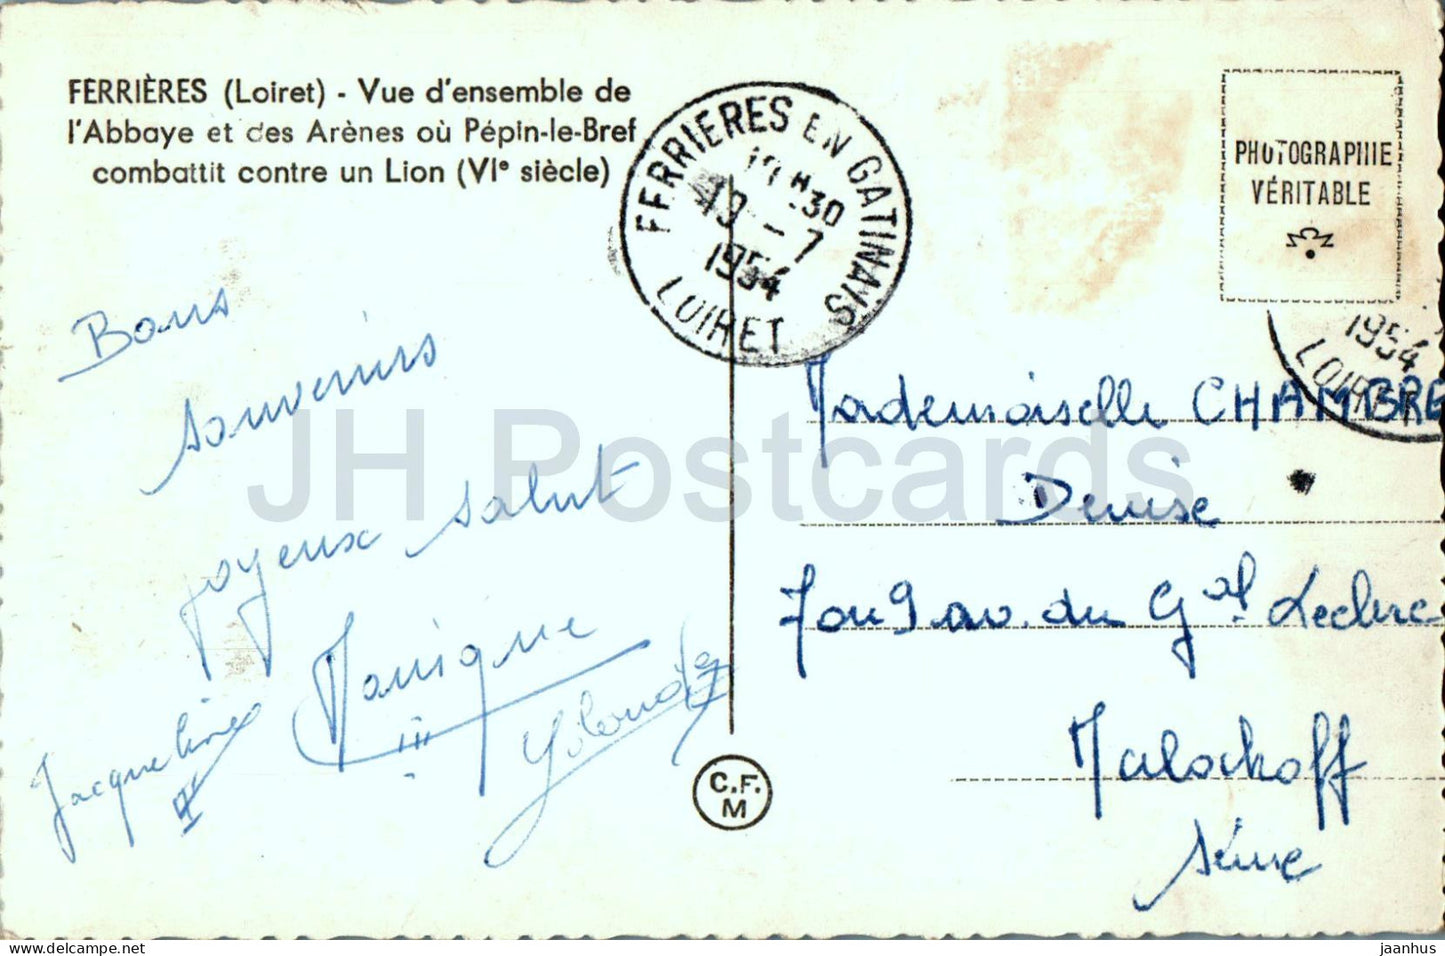 Ferrieres - Vue d'ensemble de l'Abbaye et des Arenes ou Pepin le Bref - alte Postkarte - 1954 - Frankreich - gebraucht 